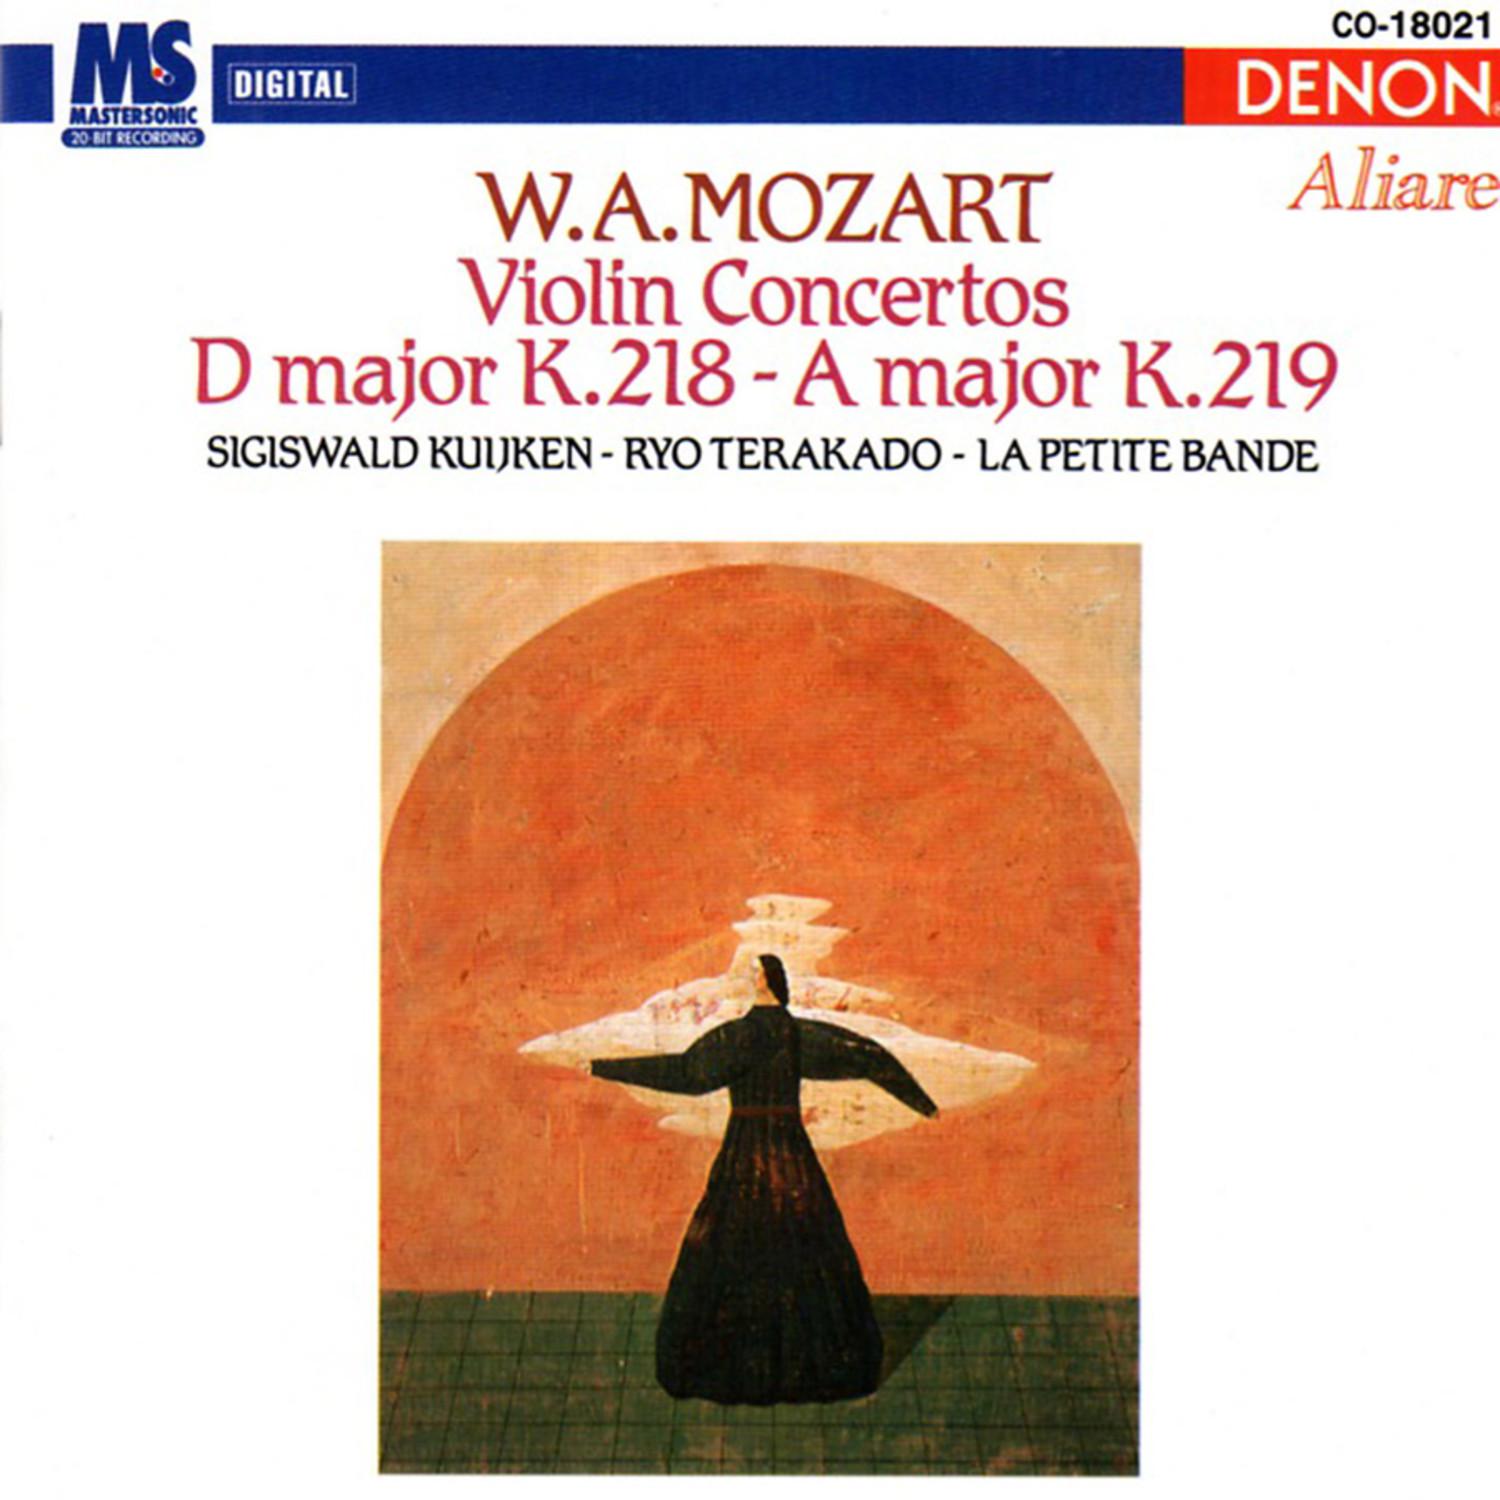 Concerto for Violin & Orchestra in A Major, K.219: III. Rondeau; Tempo di Menuetto